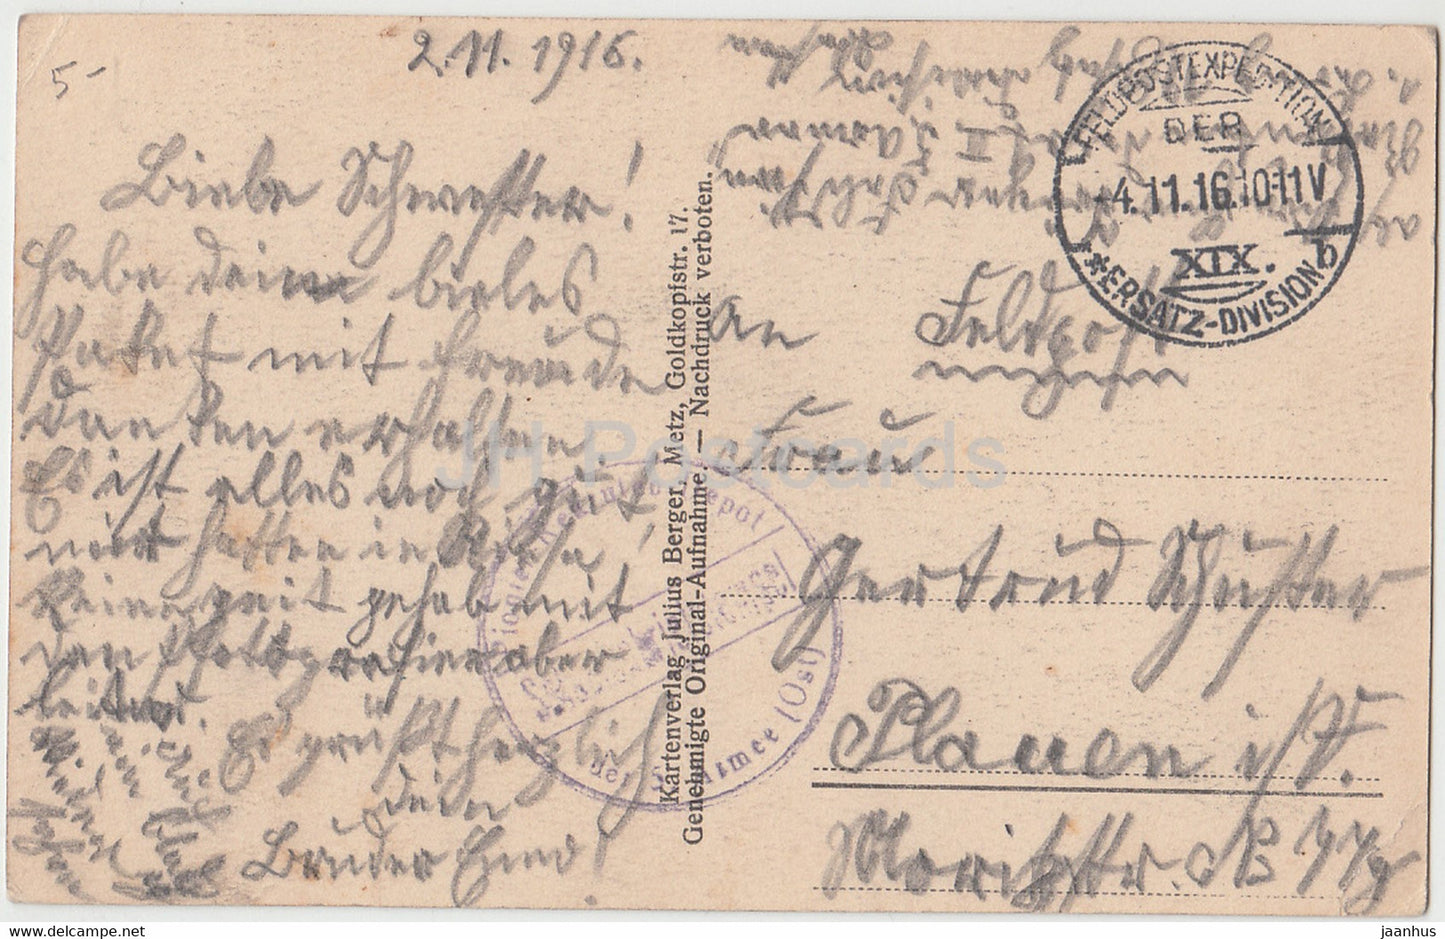 Amelsee - Feldpost - alte Postkarte - 1916 - Frankreich - gebraucht